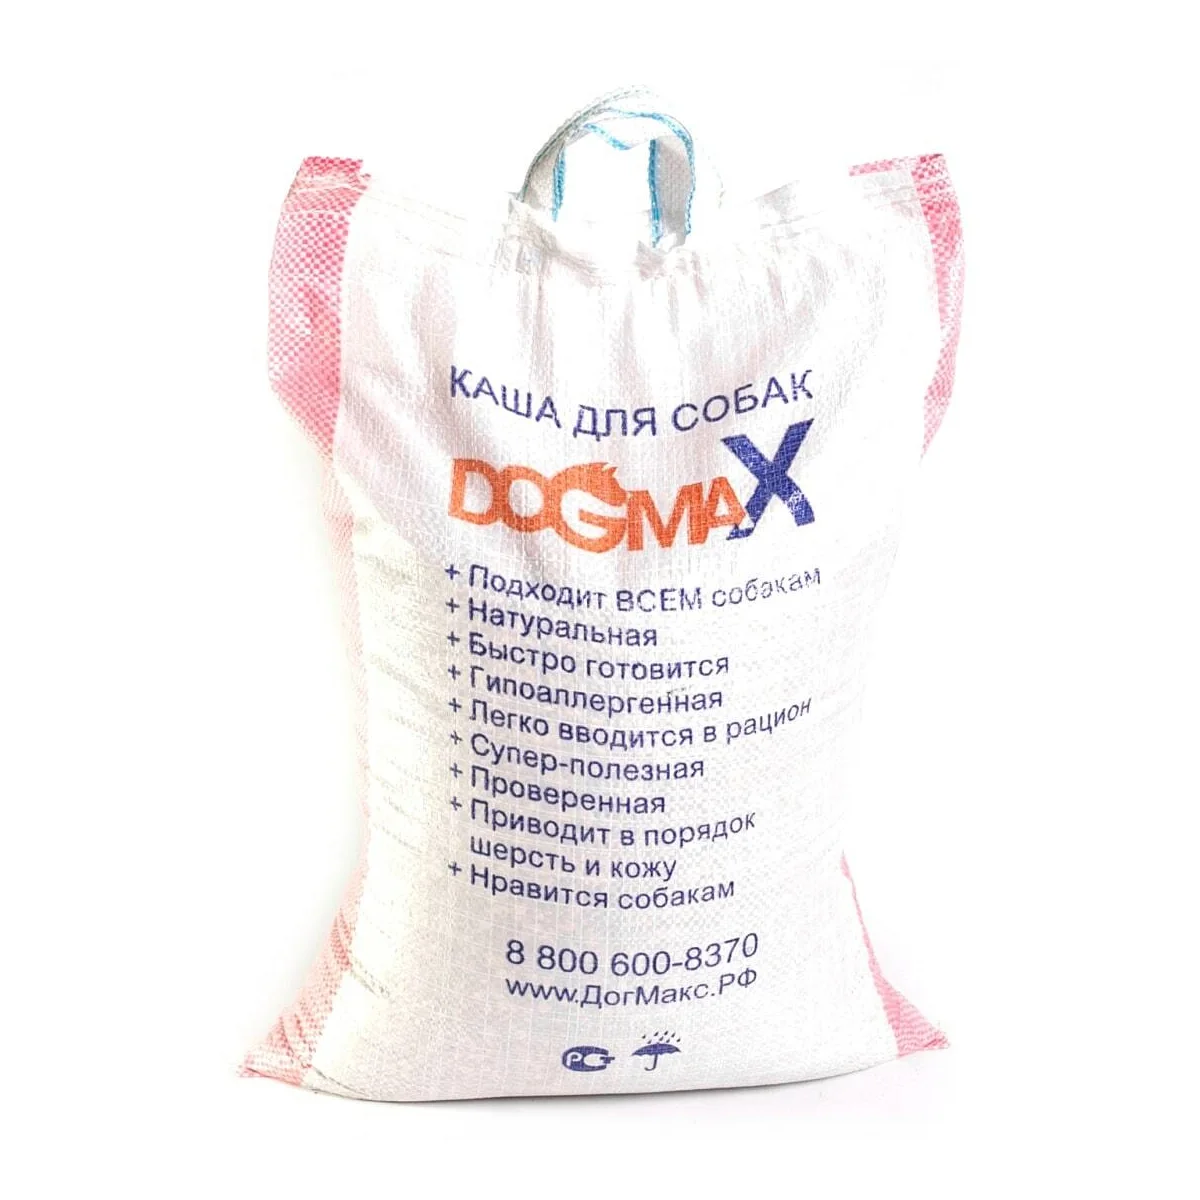 DOGMAX dog food Ration 2 (10 kg)